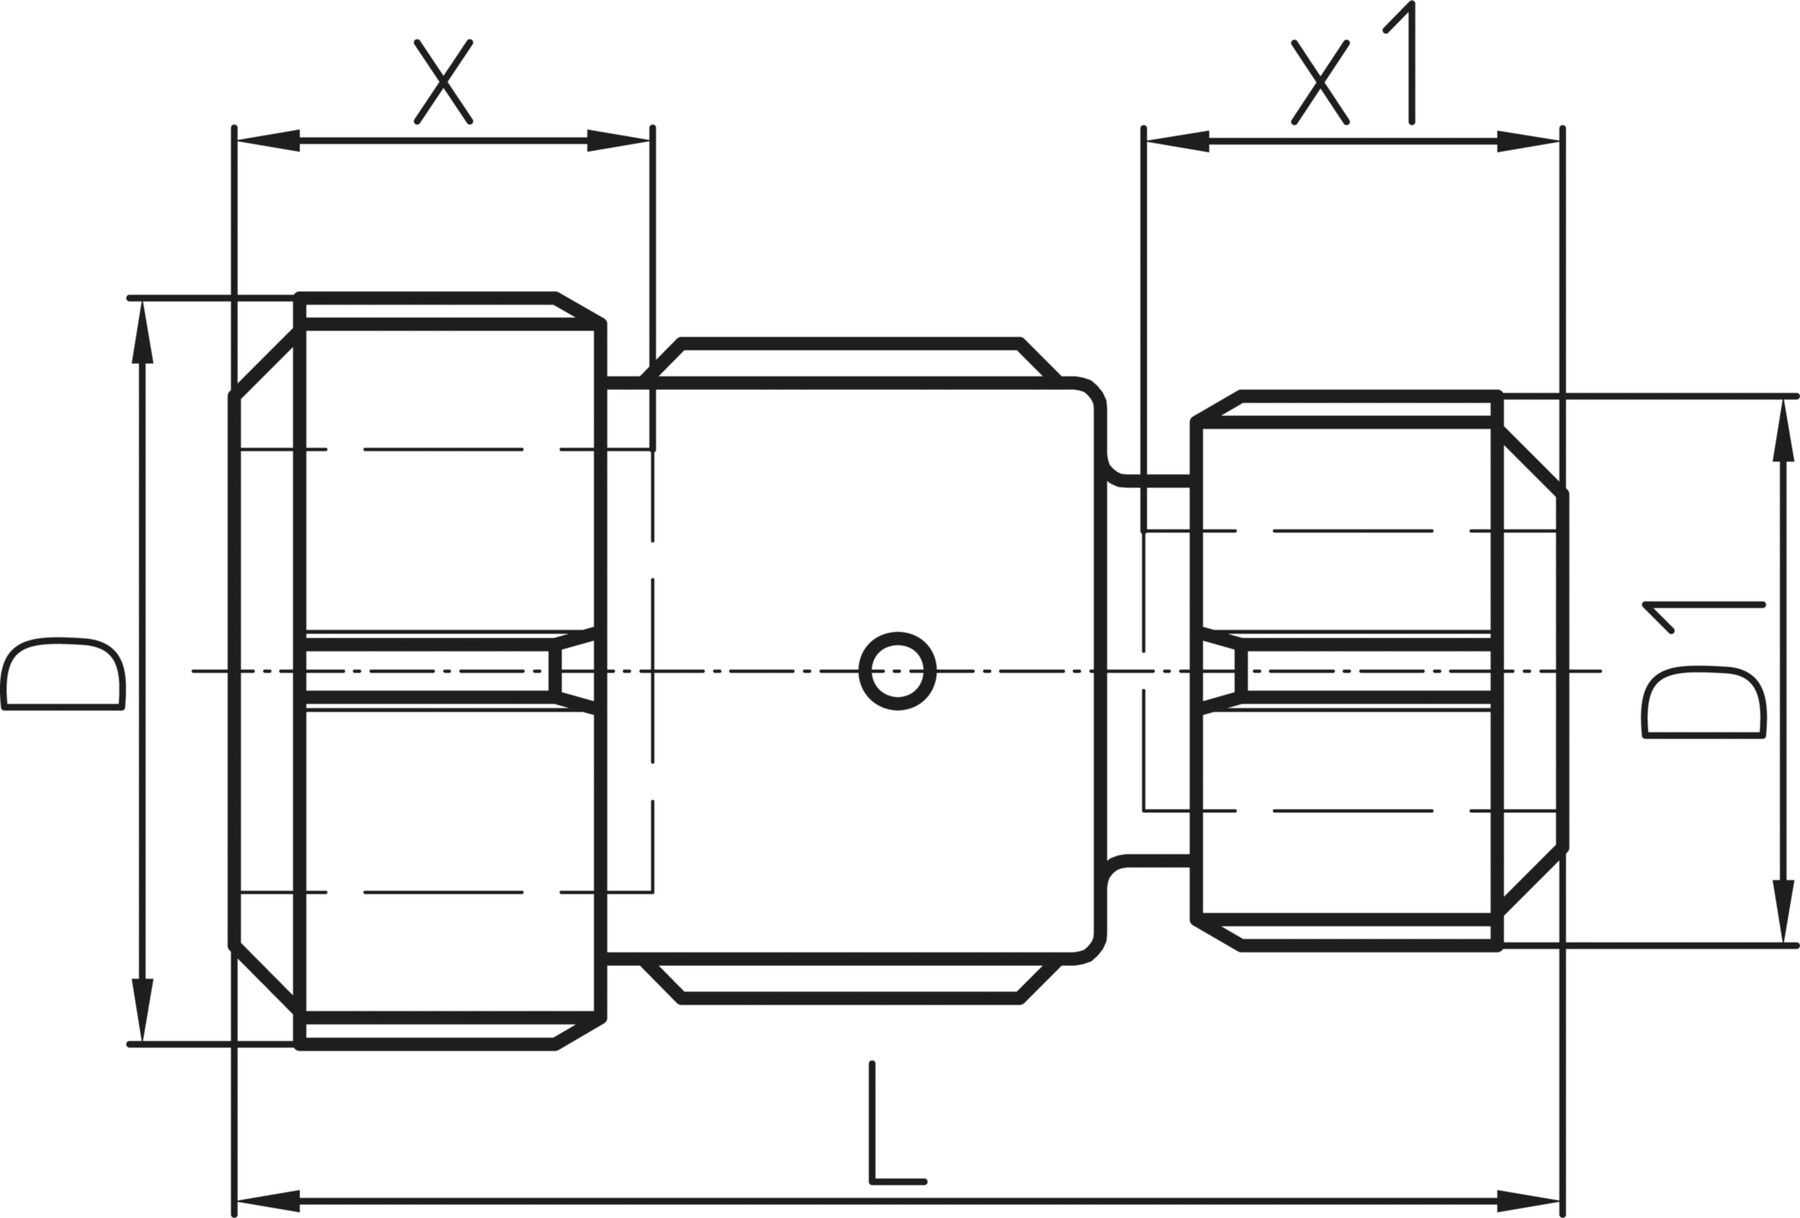 Kupplung kurz reduziert, für Stahlrohre EPDM 11/2" x 1 1/4" 775 106 070 - GF Primofit